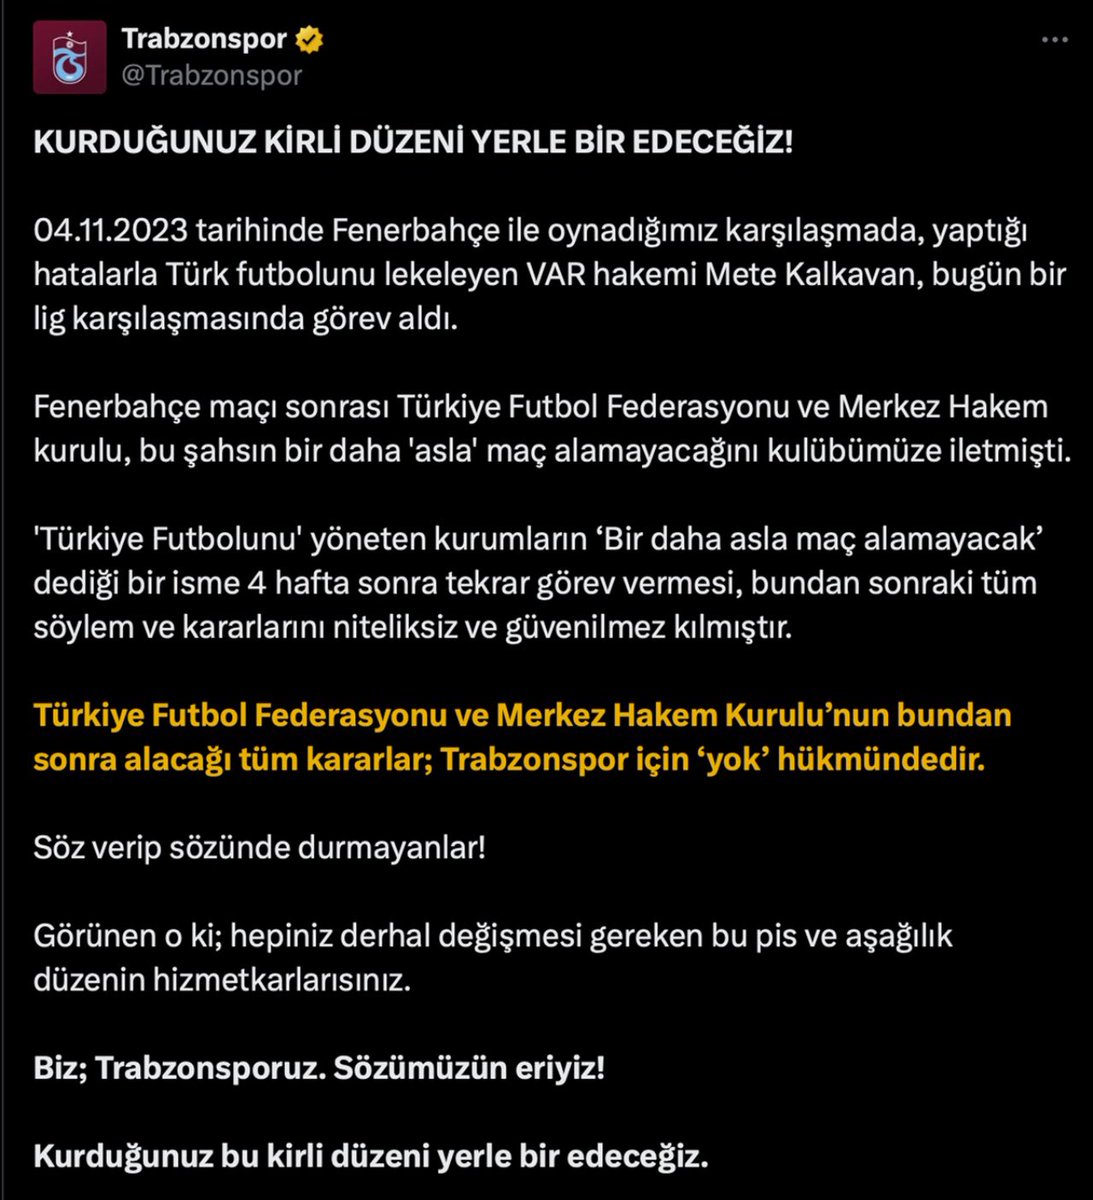 Trabzonspor gerek sezon başı gerekse sezon içerisinde hem yönetimsel hem de MHK’ye yönelik onlarca açıklamada bulundu. Bunlar yapılırken susanlar bugün külhanbeyi kesilmiş :)